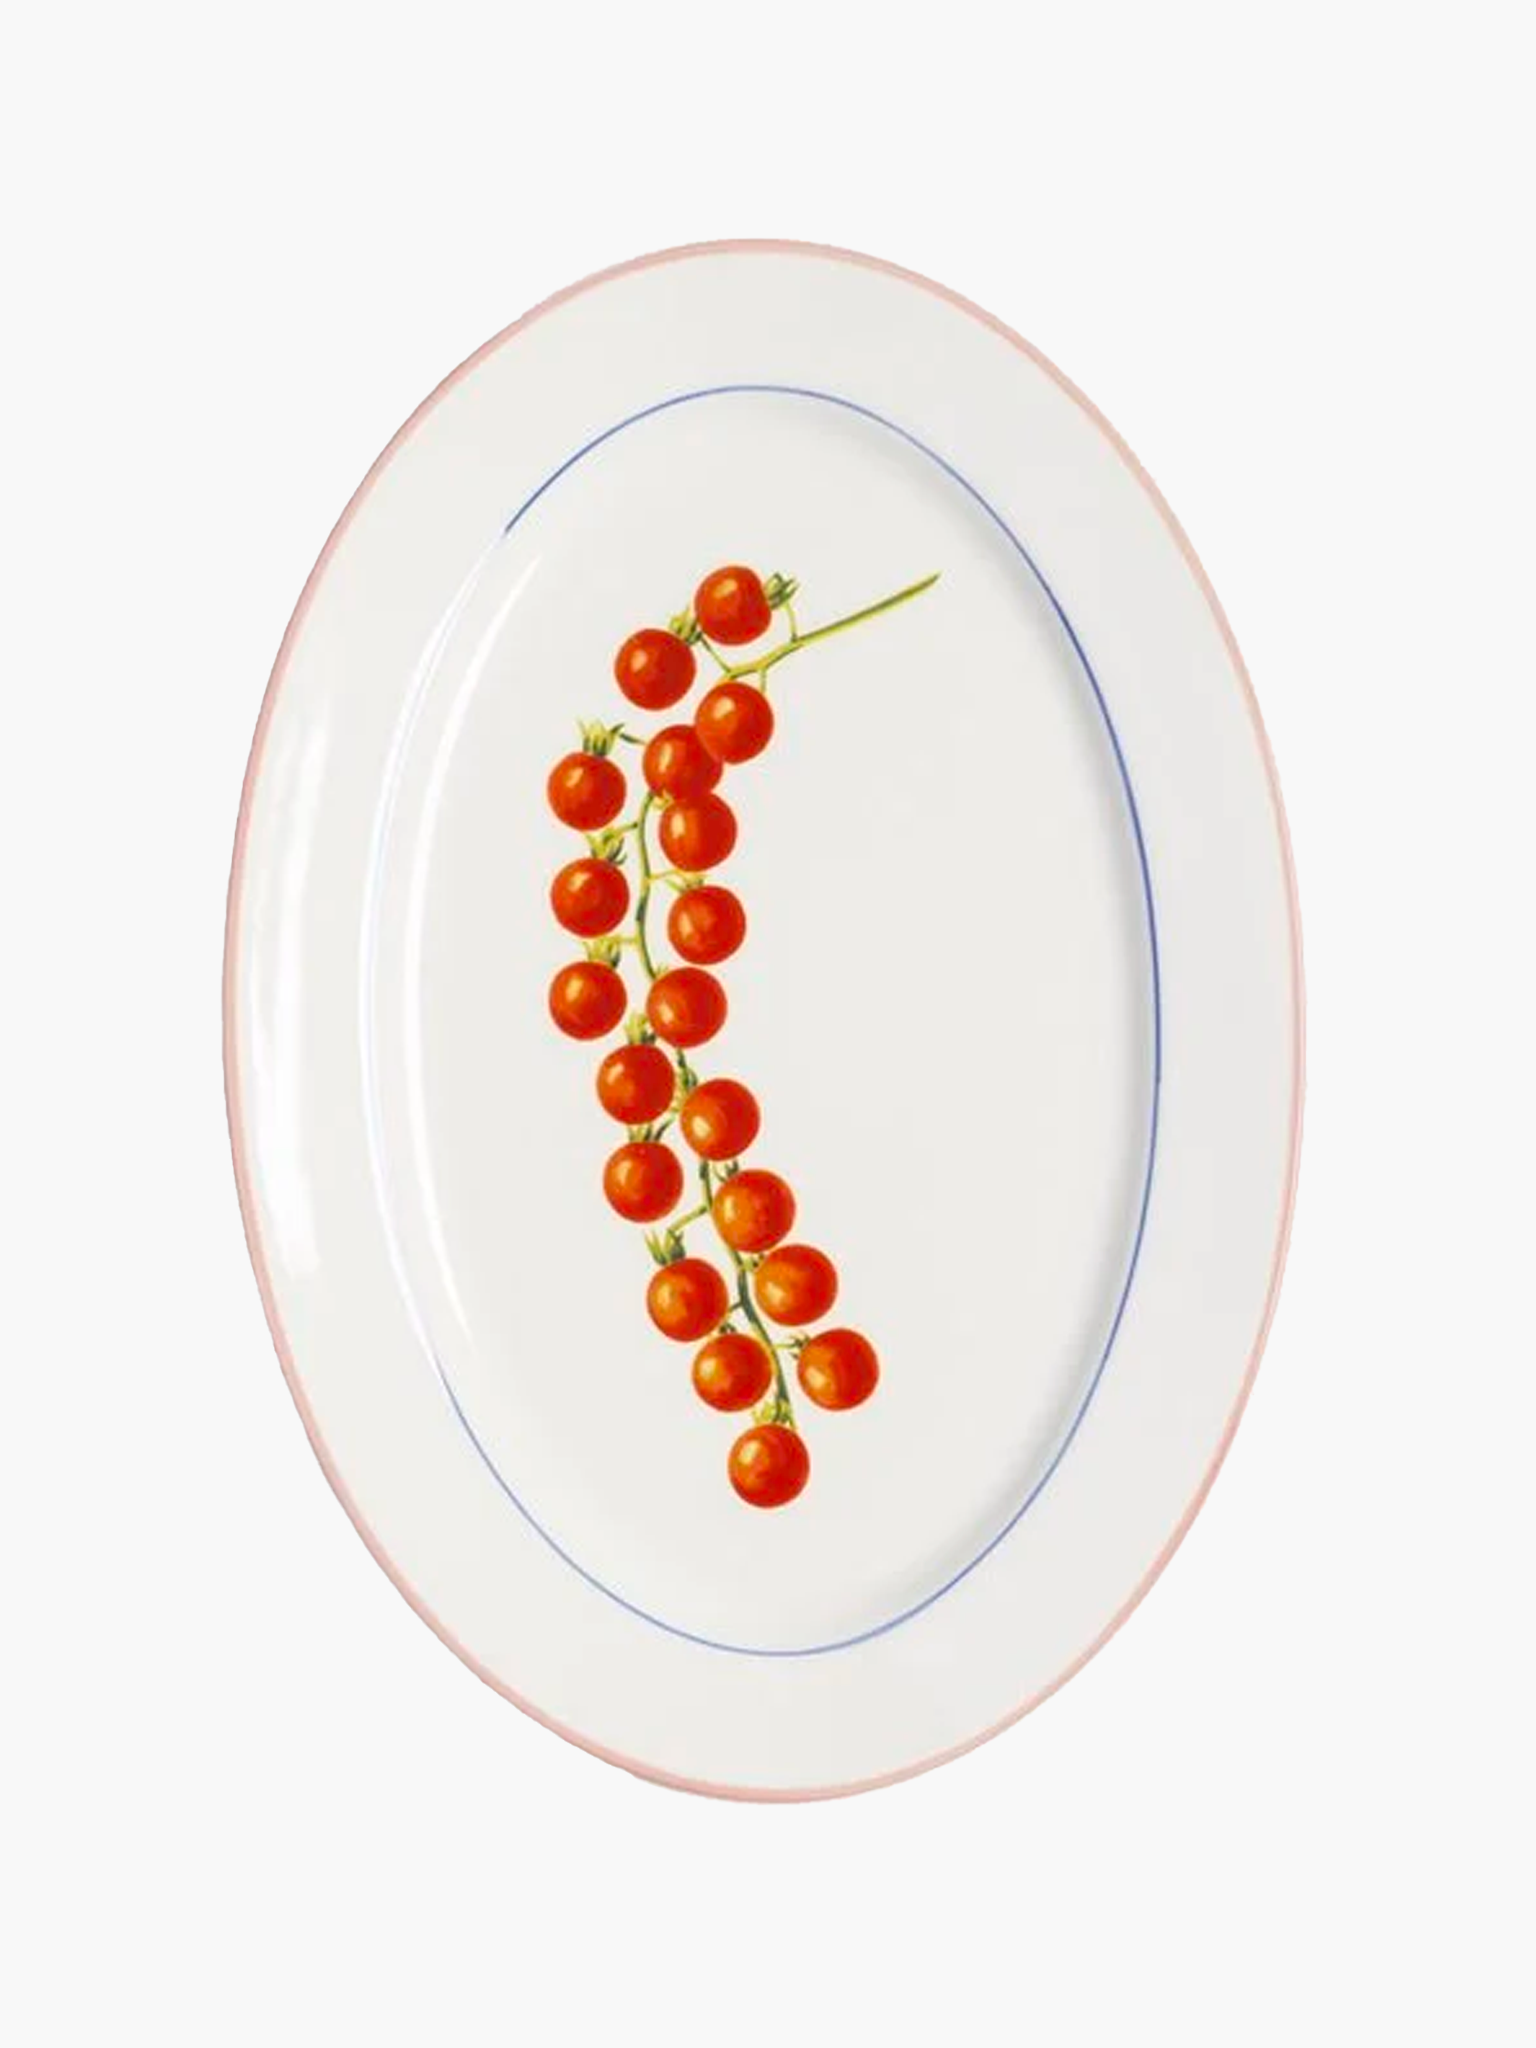 Tomato Plate